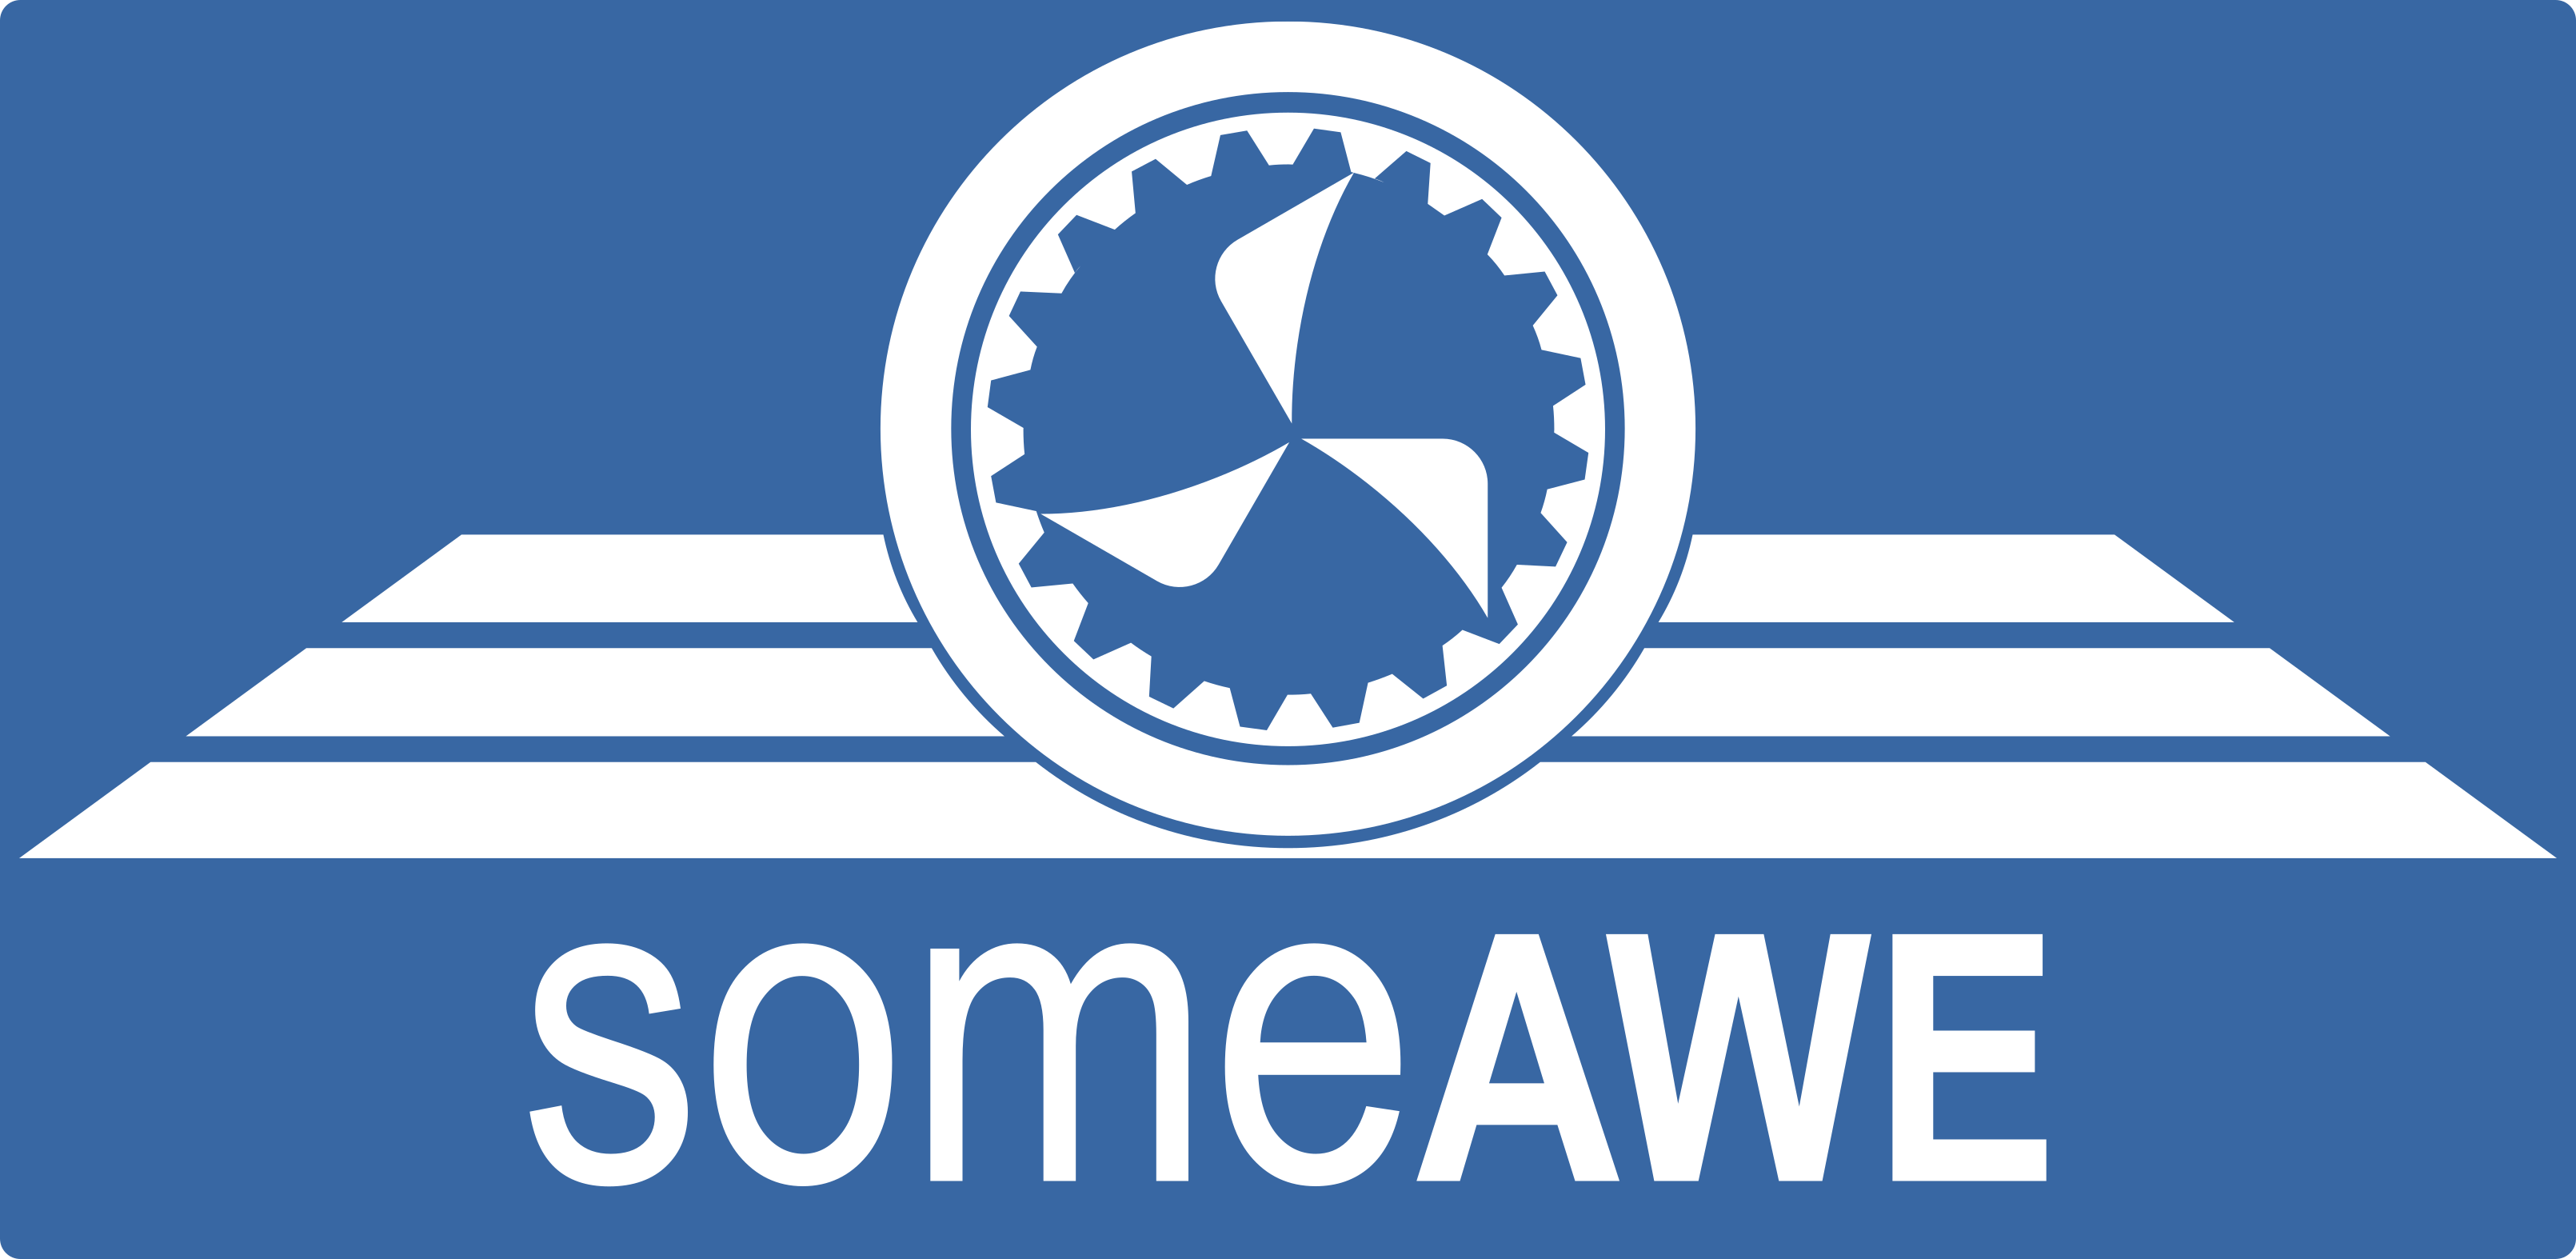 someawe.org